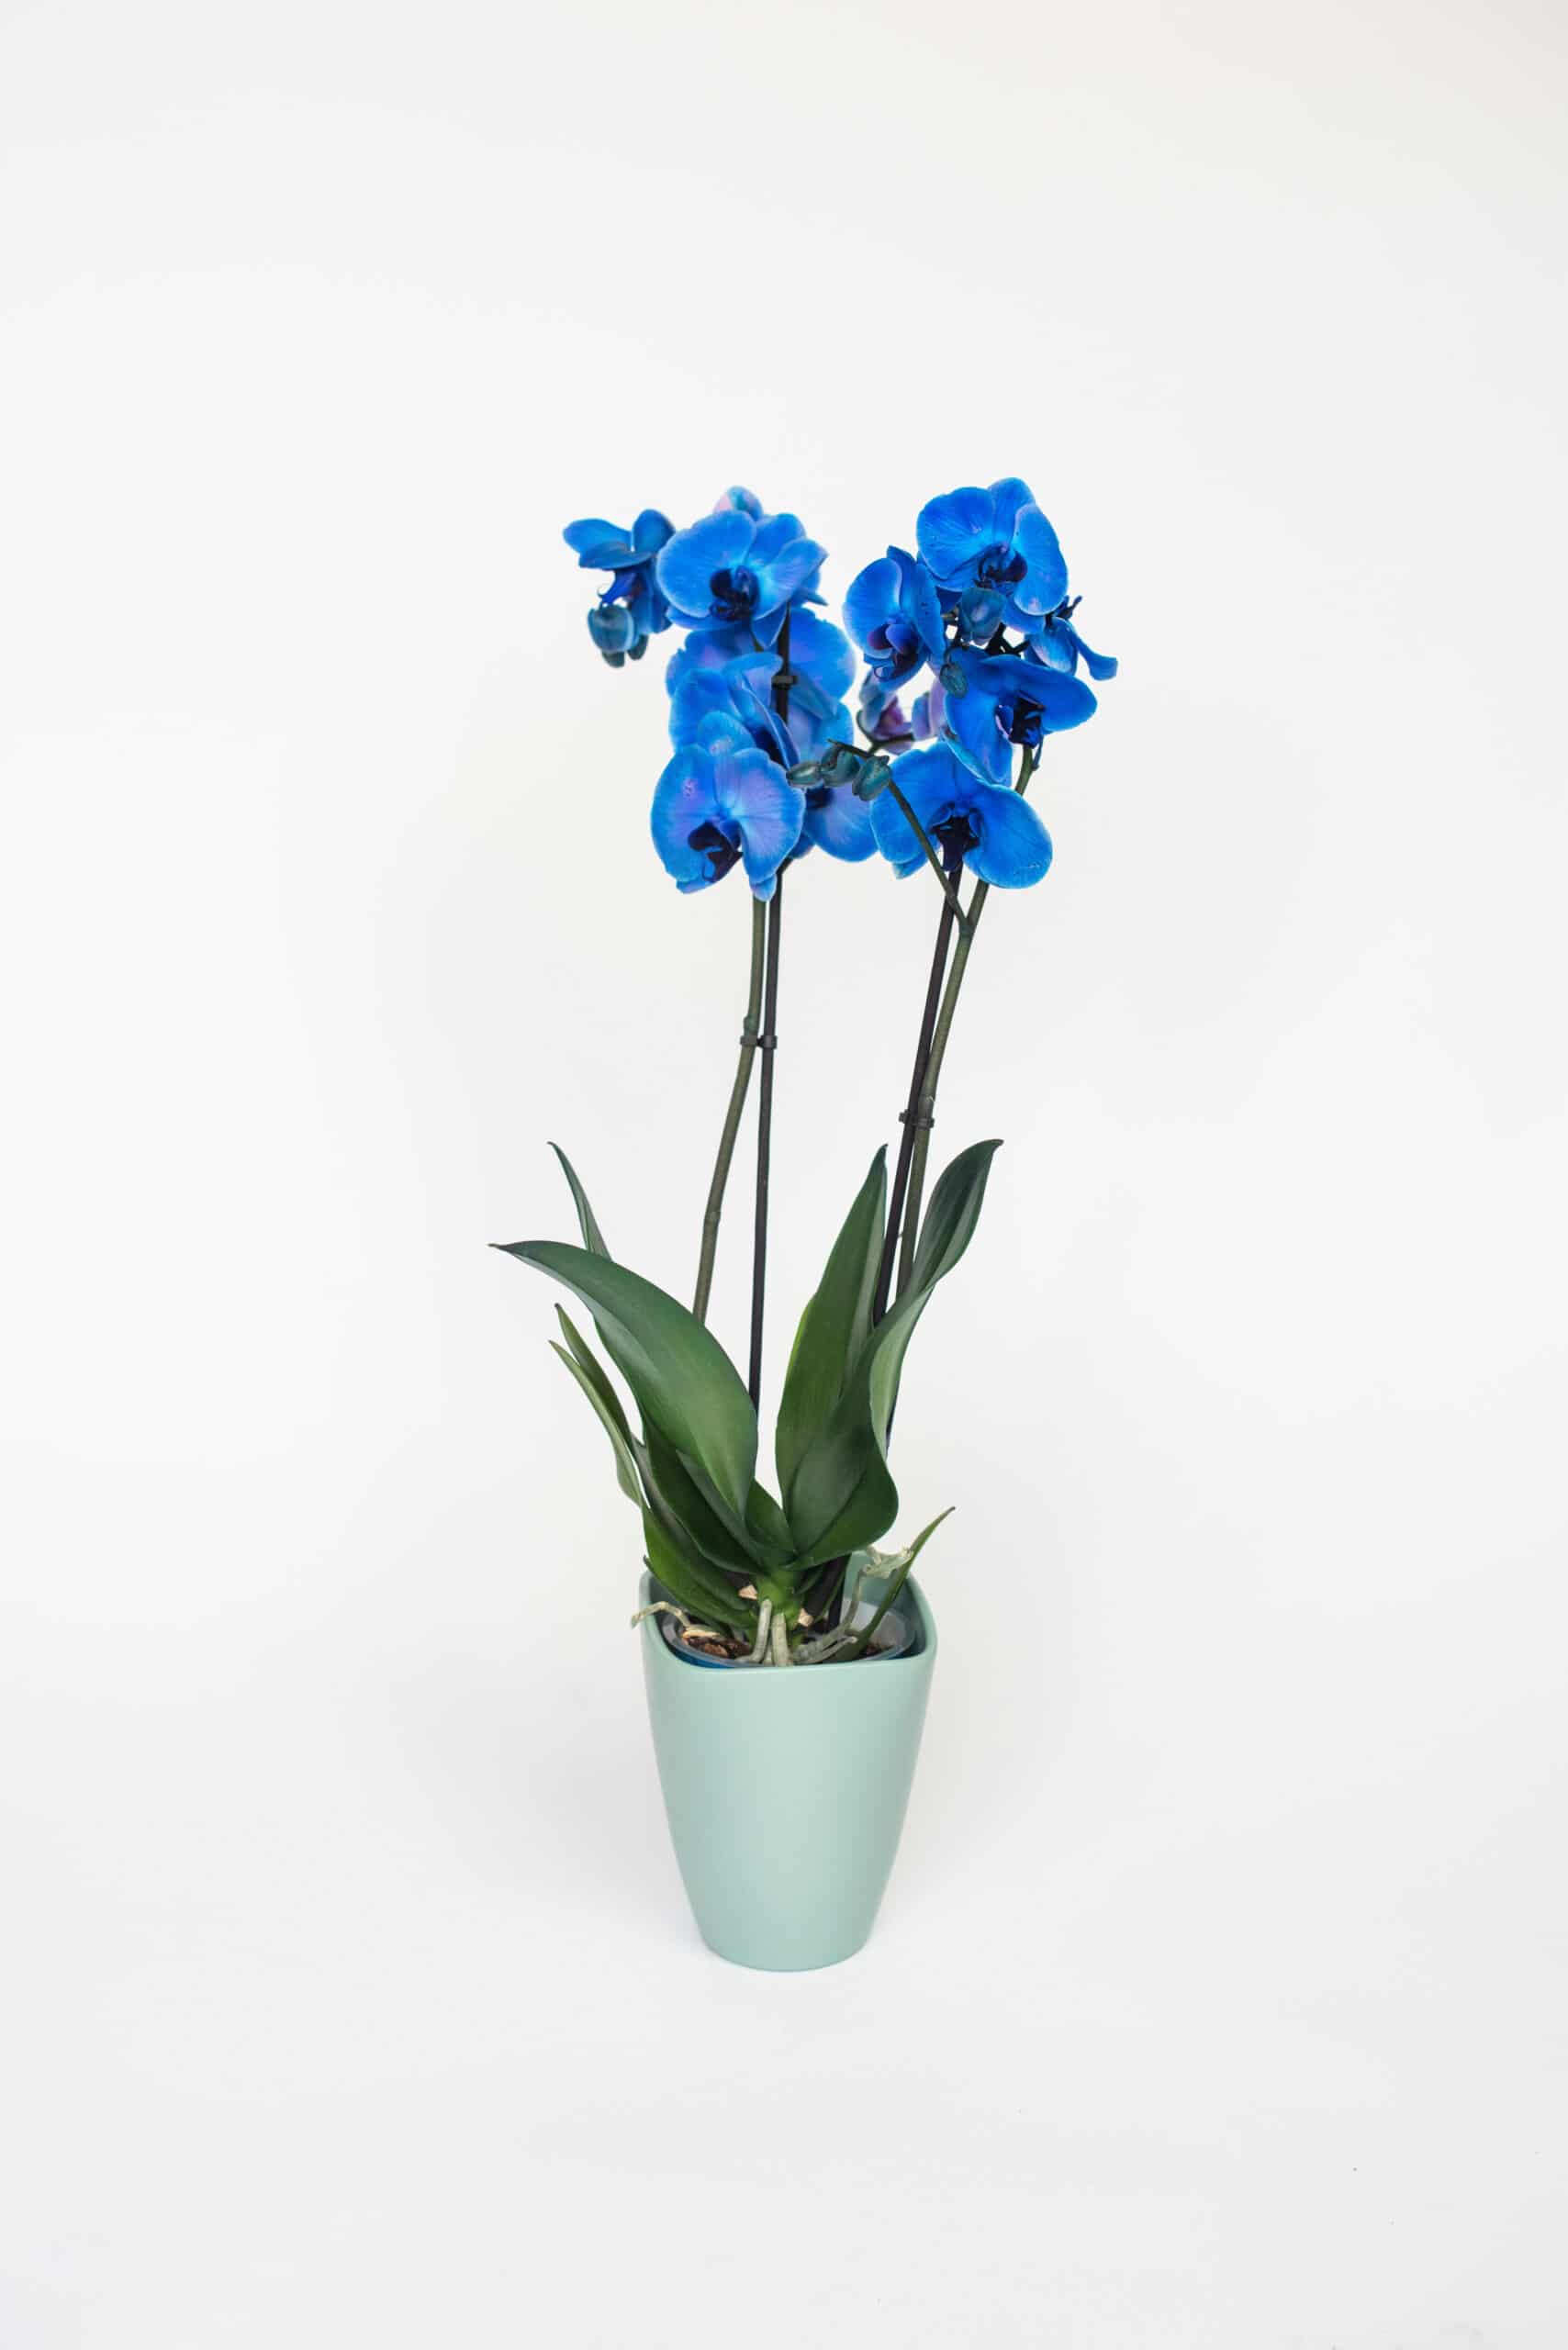 leef ermee Verschrikkelijk Terminologie Bloeiende plant | Blauwe Orchidee | Online bestellen | Philippo Flowers